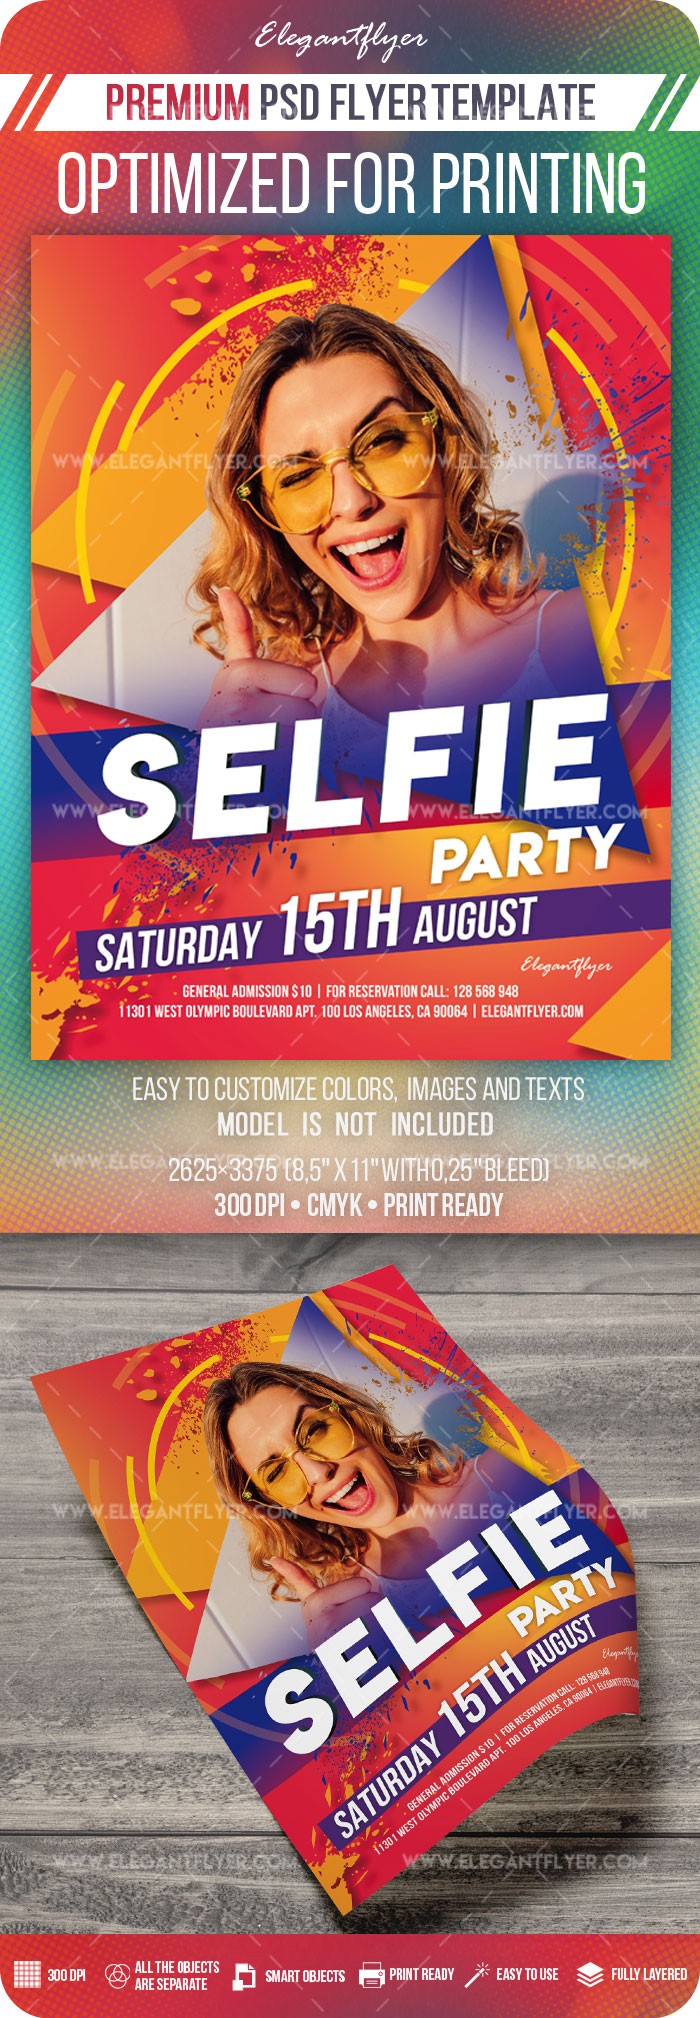 Selfie Party by ElegantFlyer